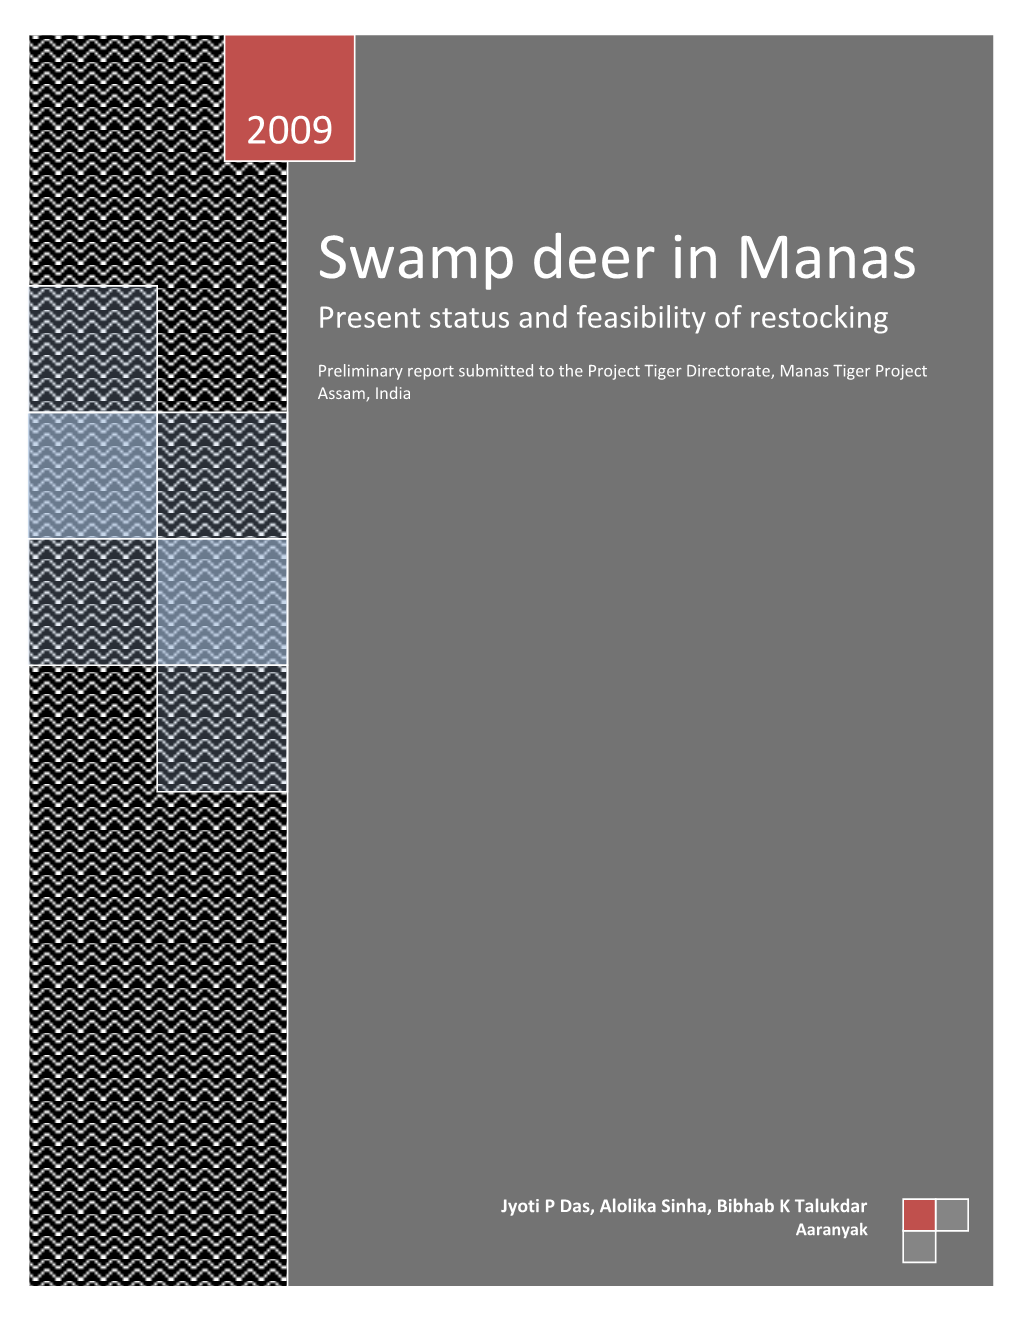 Swamp Deer in Manas